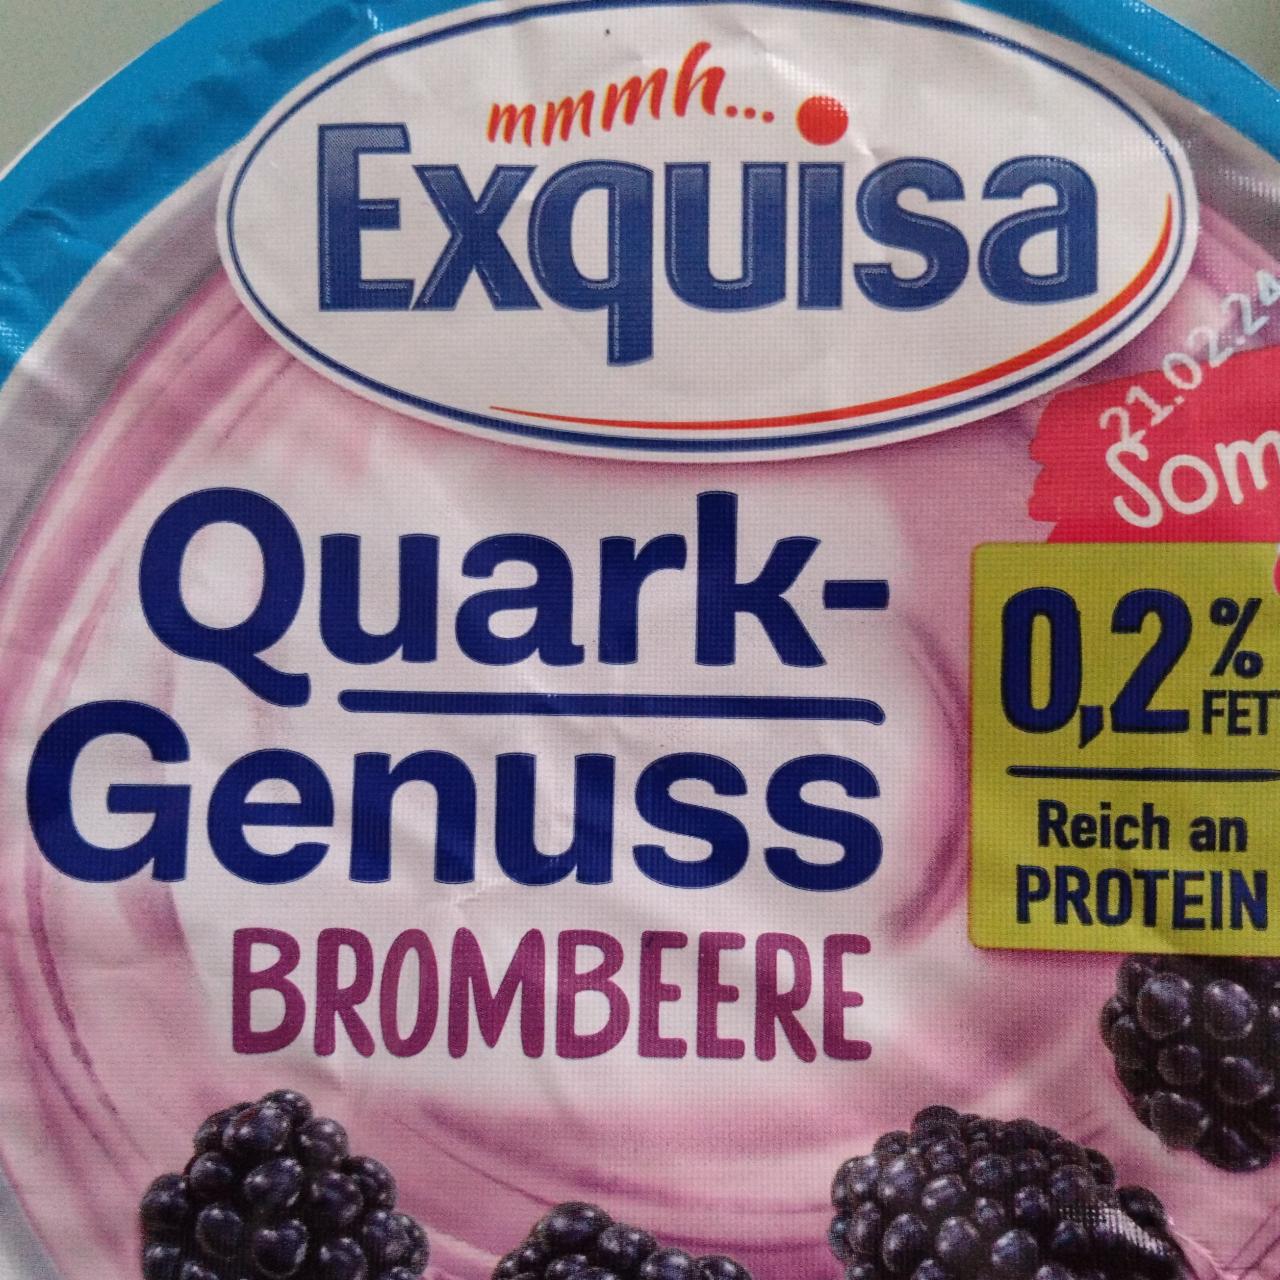 Фото - Quark Genuss Brombeere 0.2% Exquisa